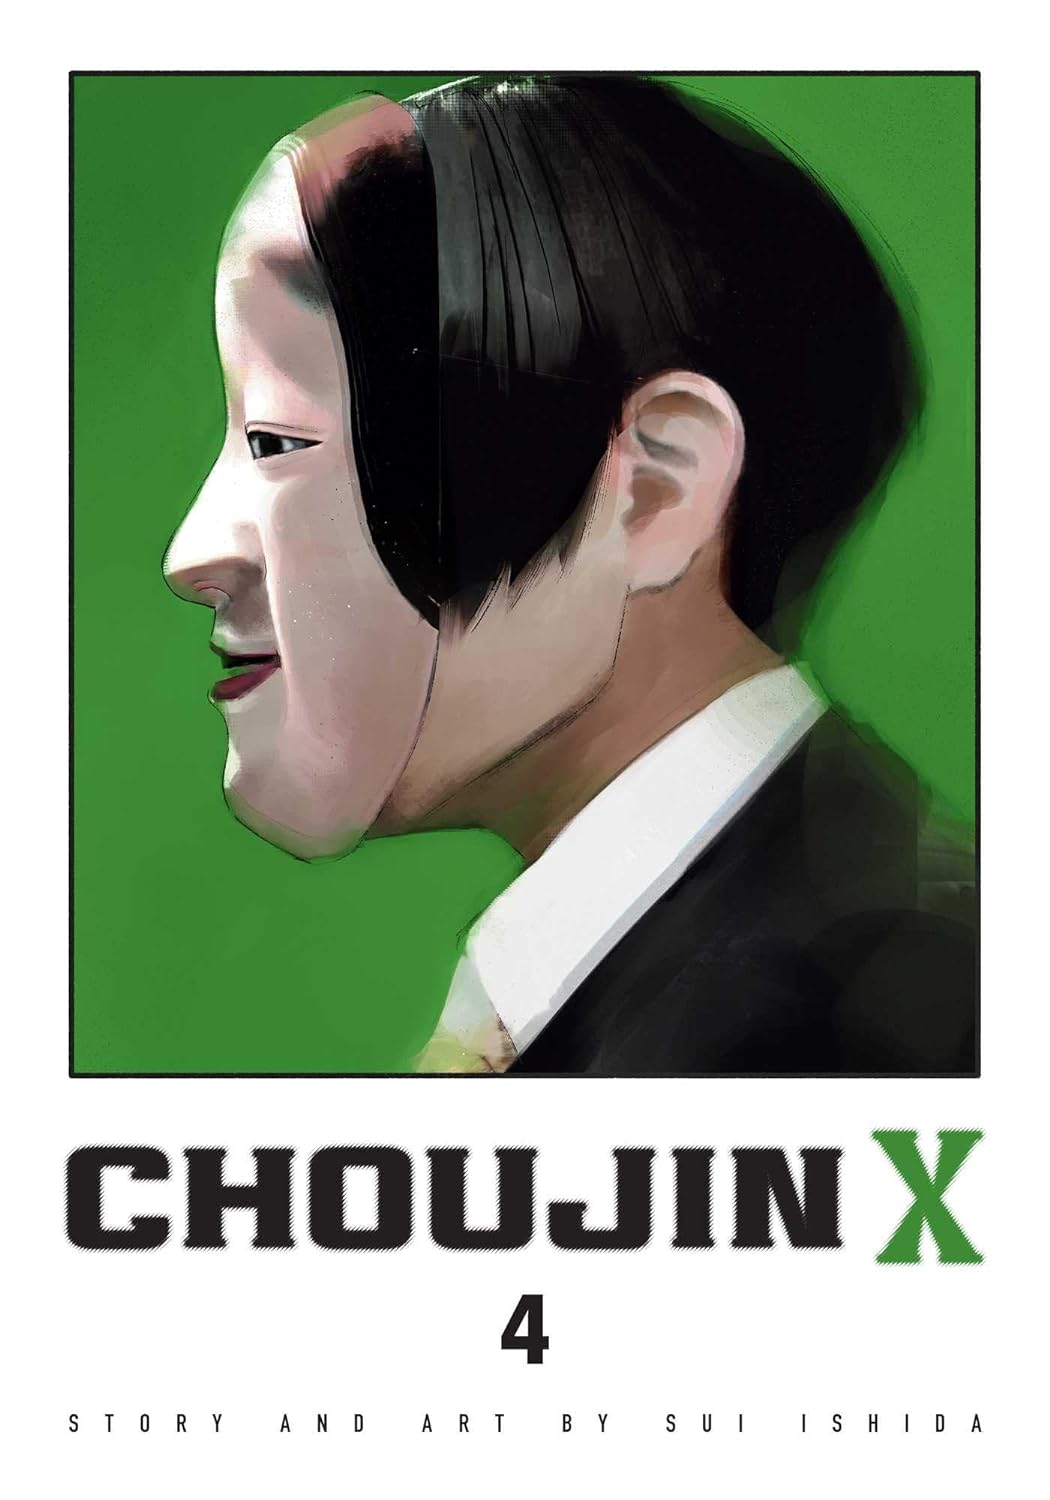 Choujin X vol 4 by Sui Ishida